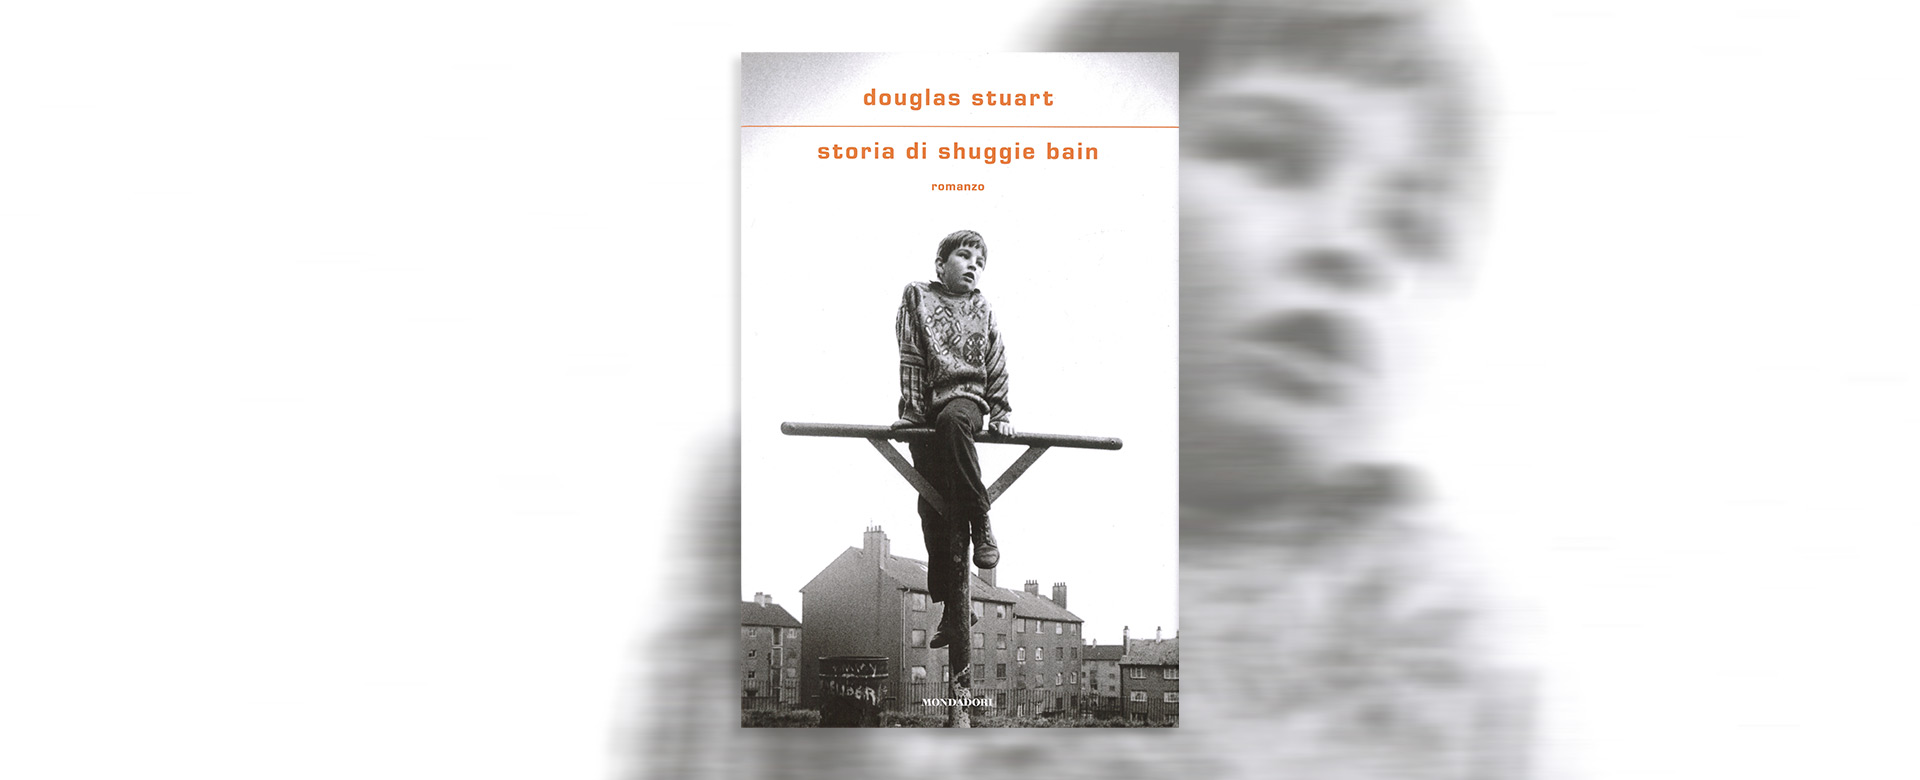 Copertina del libro "Storia di Shuggie Bain" di Douglas Stuart